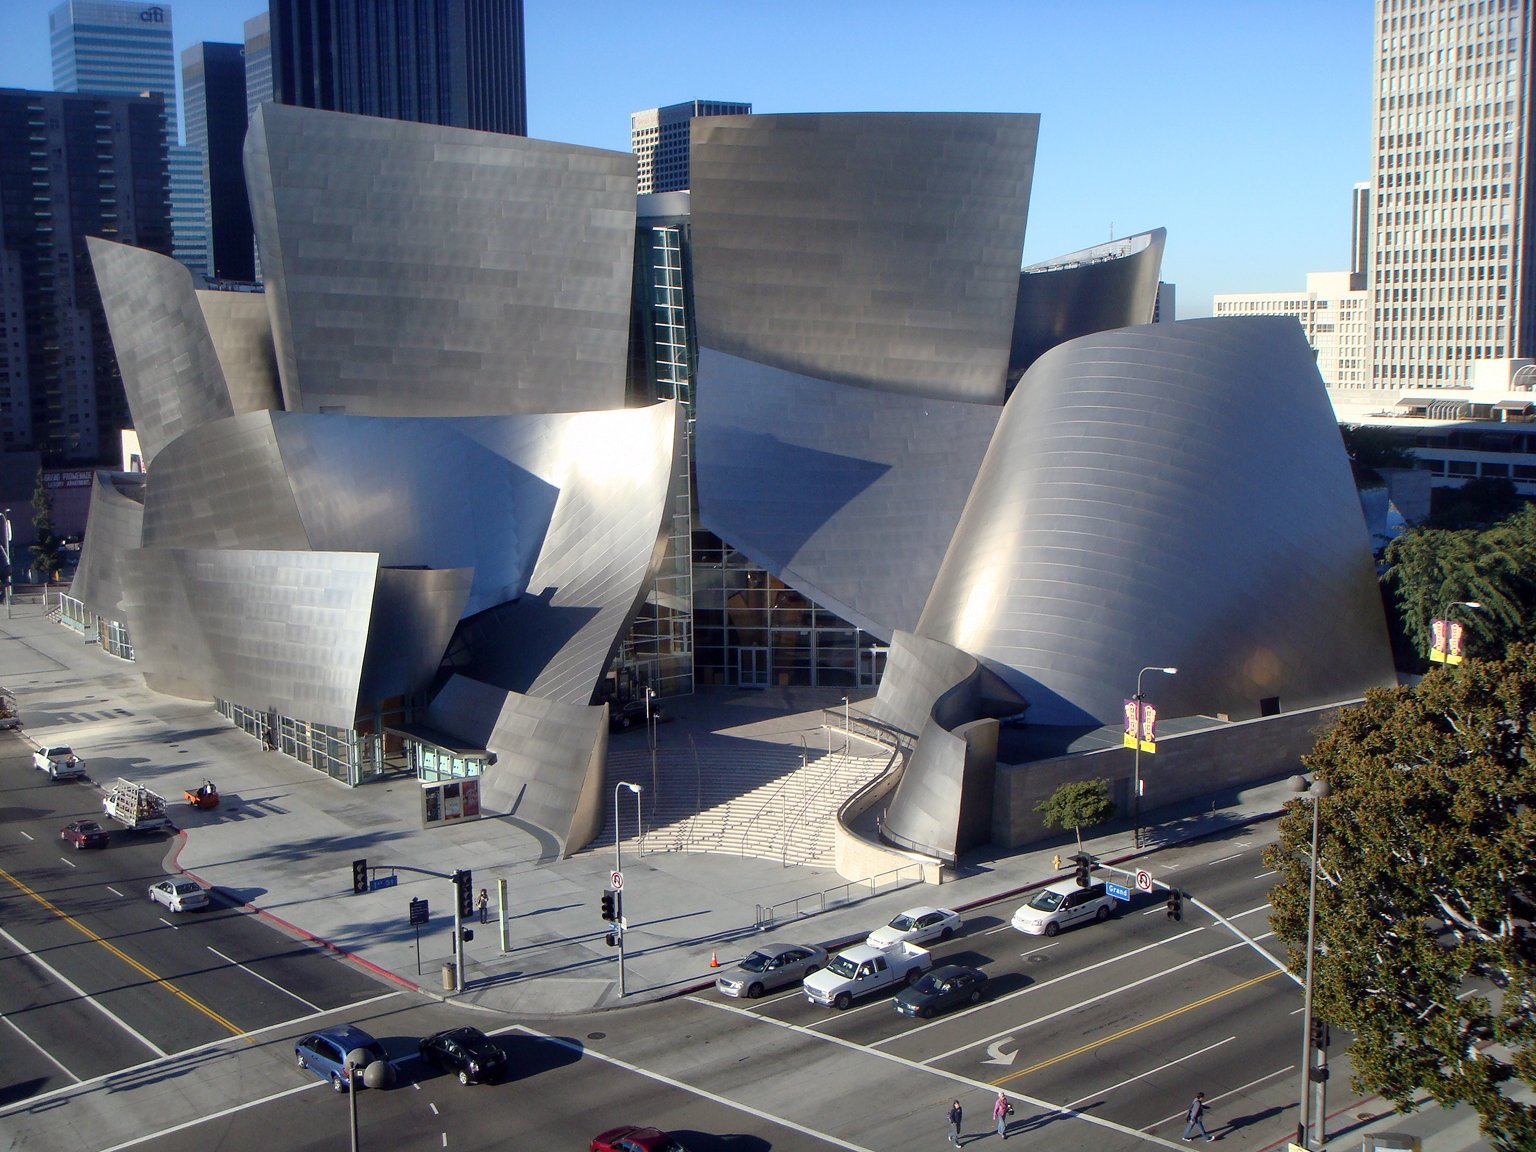 Зал диснея. Концертный зал имени Уолта Диснея в Лос-Анджелесе. Лос Анджелес концертный зал Уолта Диснея. Фрэнк Гери концертный зал Уолта Диснея. Концертный зал имени Уолта Диснея в Лос-Анджелесе (2003).